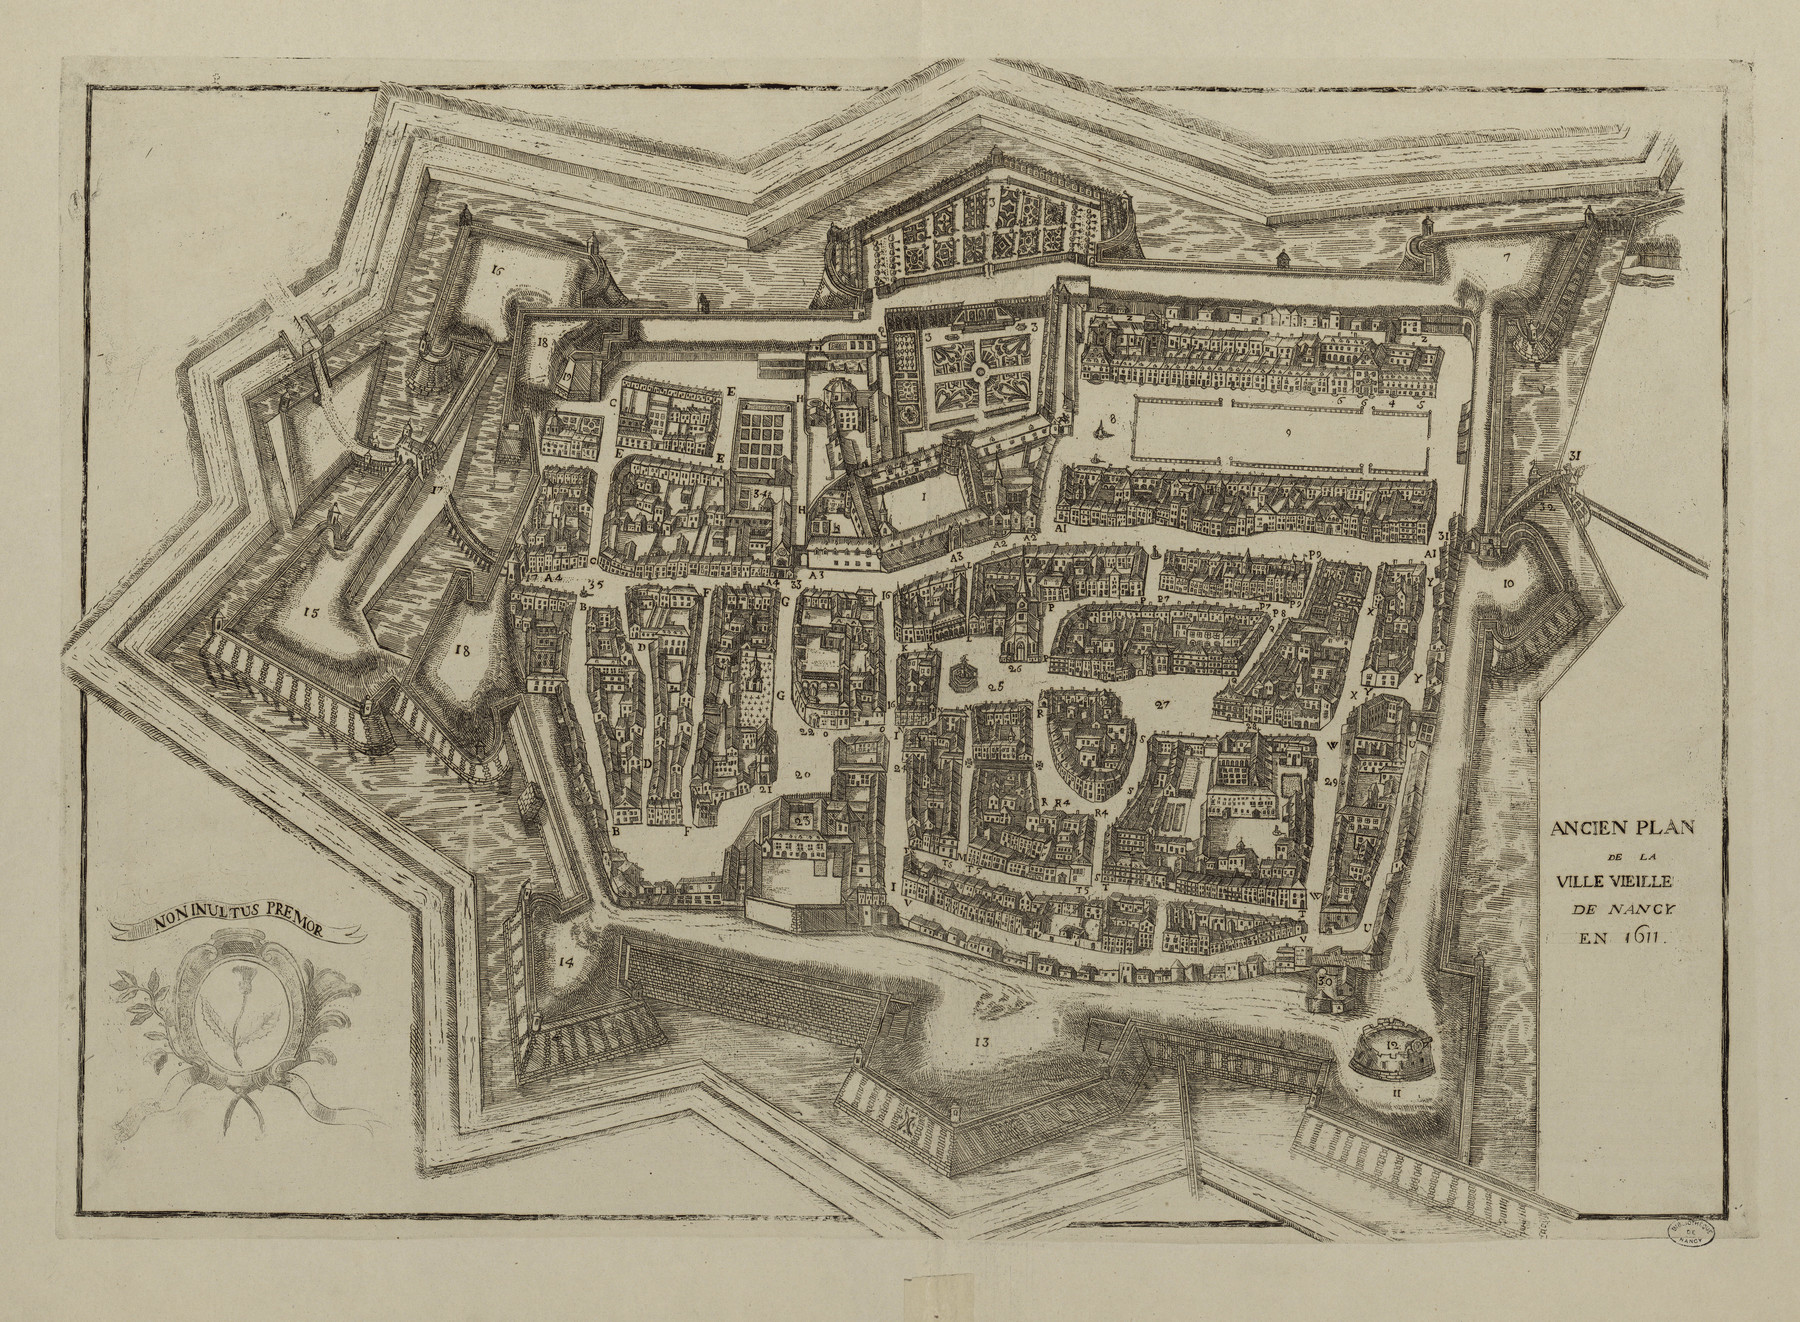 Contenu du Ancien plan de la ville vieille de Nancy en 1611